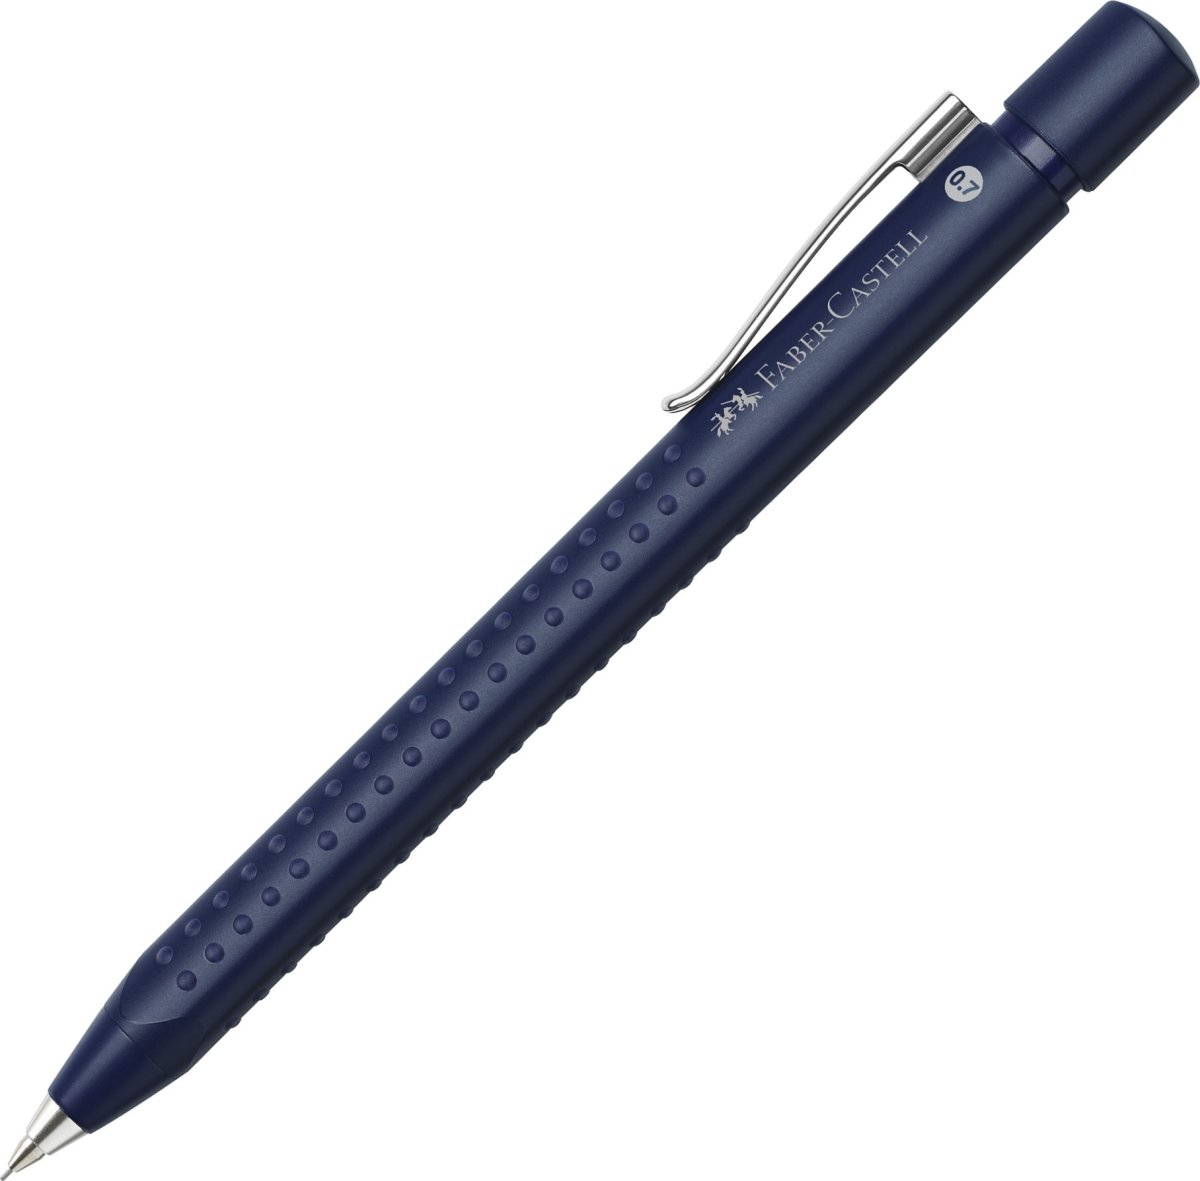 Faber-Castell Grip Stiftpenna, blå